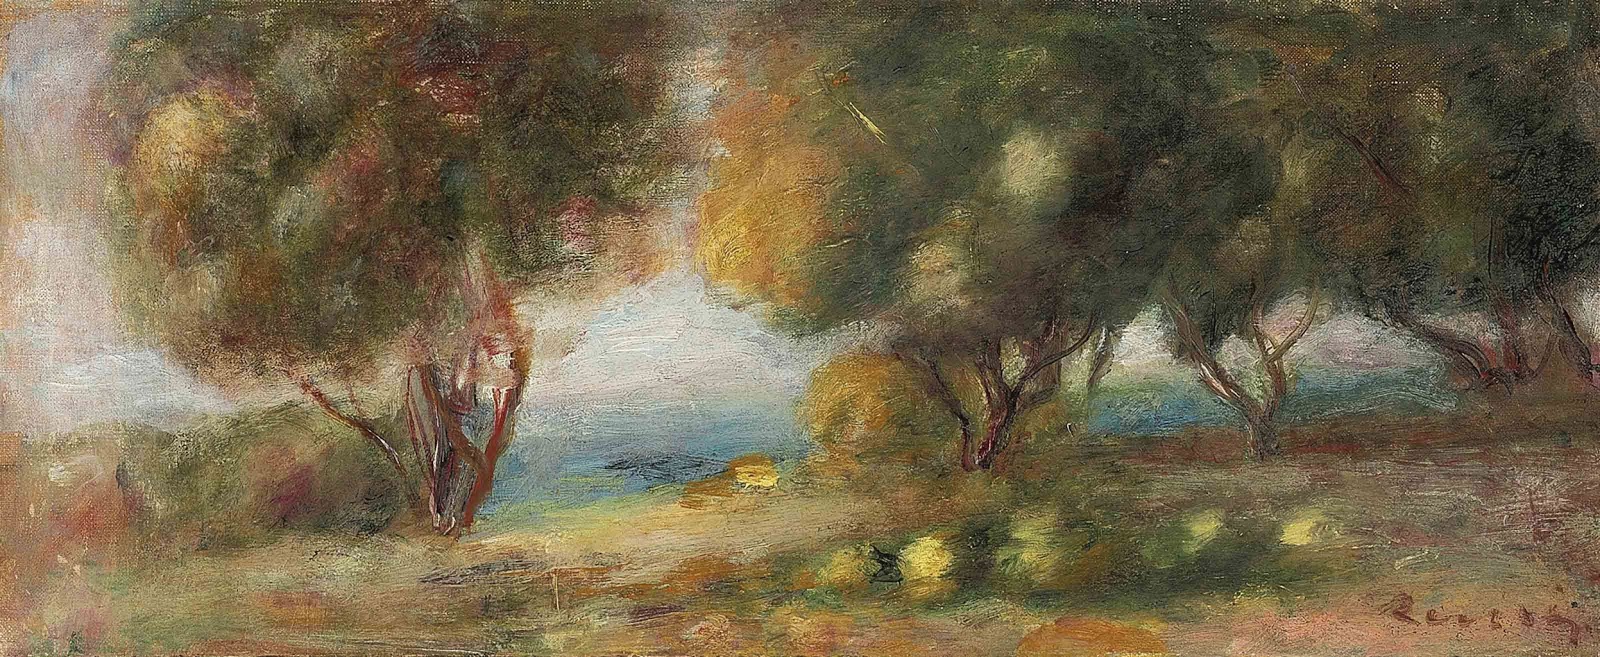 Pierre+Auguste+Renoir-1841-1-19 (603).jpg